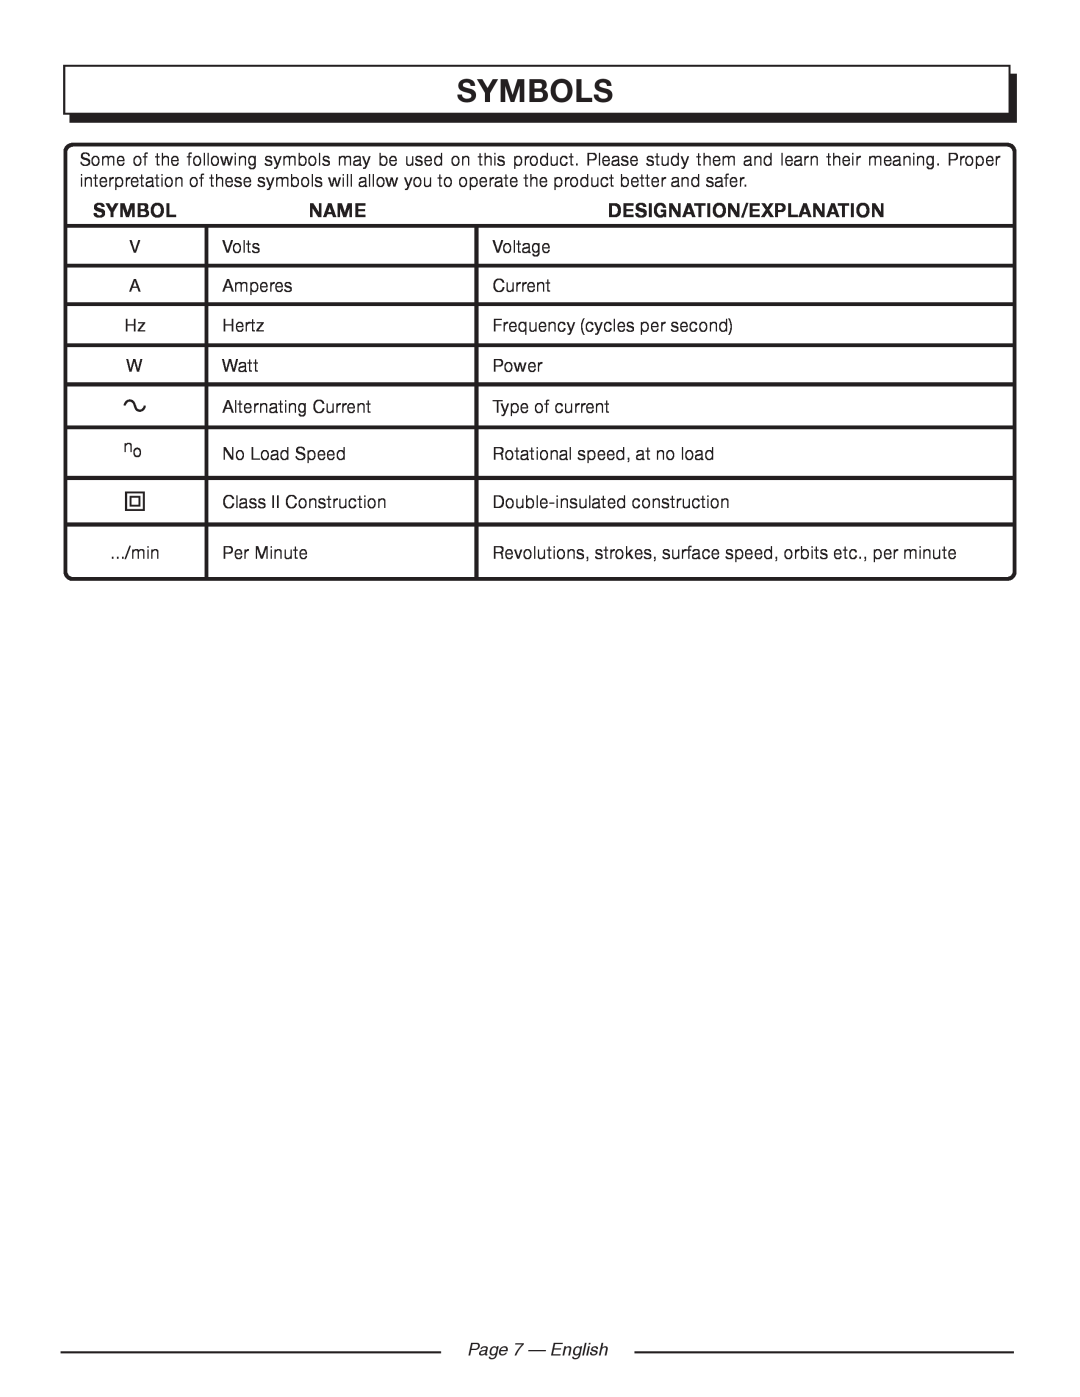 Homelite UT80720 manuel dutilisation Page 7 - English, Symbols, Name, Designation/Explanation 